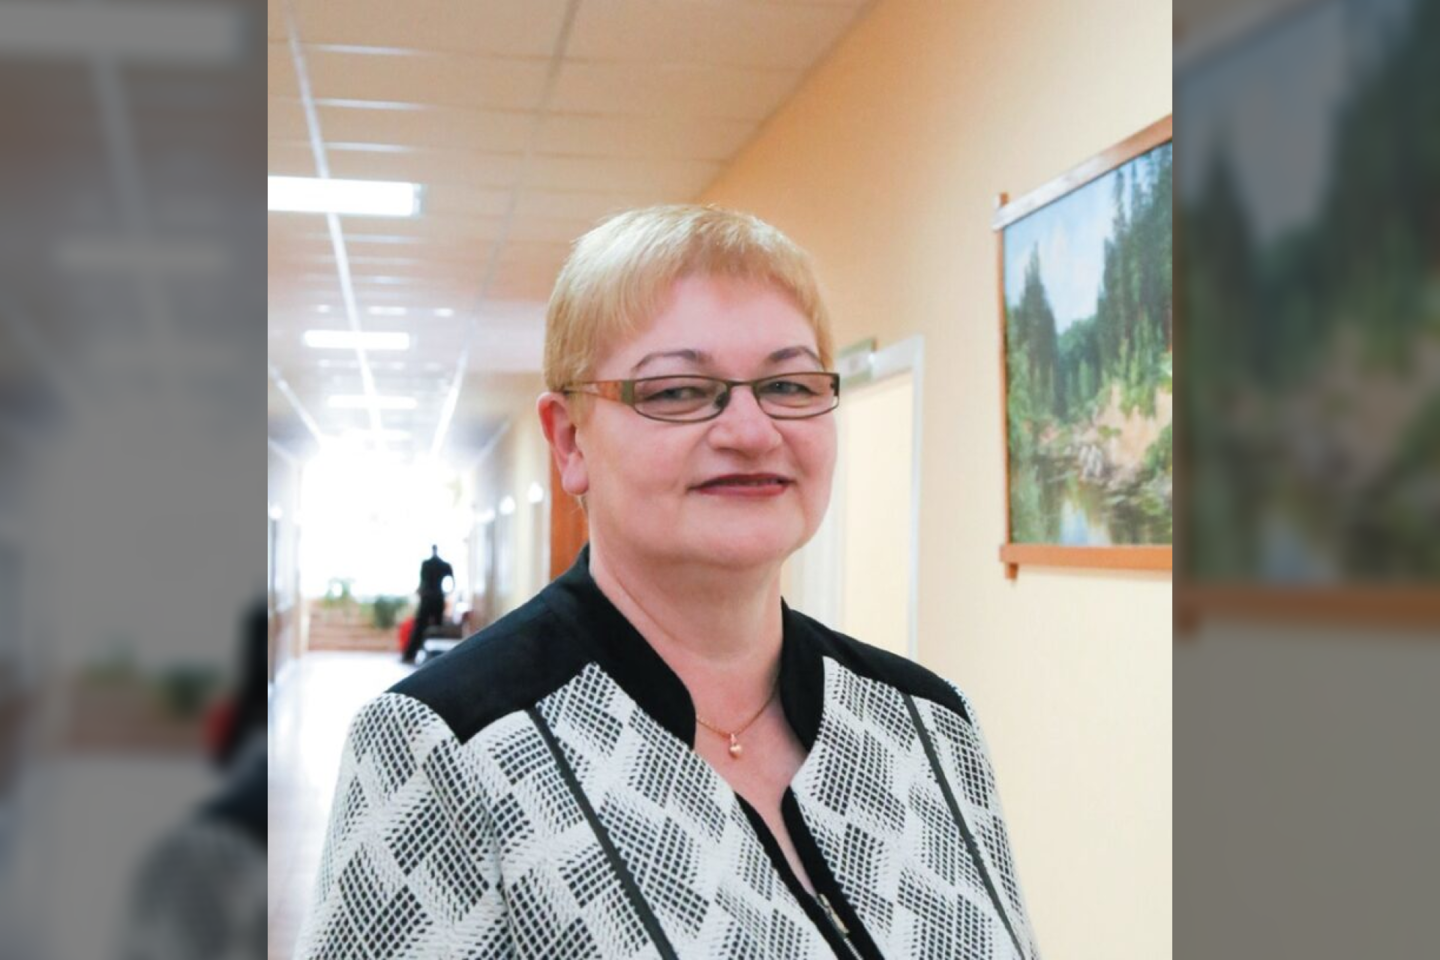 PSPC direktorė Audronė Rimkevičienė tikino, kad įstaigosfinansai neleidžia daryti mokėjimų, kokių tikisi gydytojai.<br>Giedrės Minelgaitės-Dautorės/ „Rinkos aikštės“ archyvo nuotr.